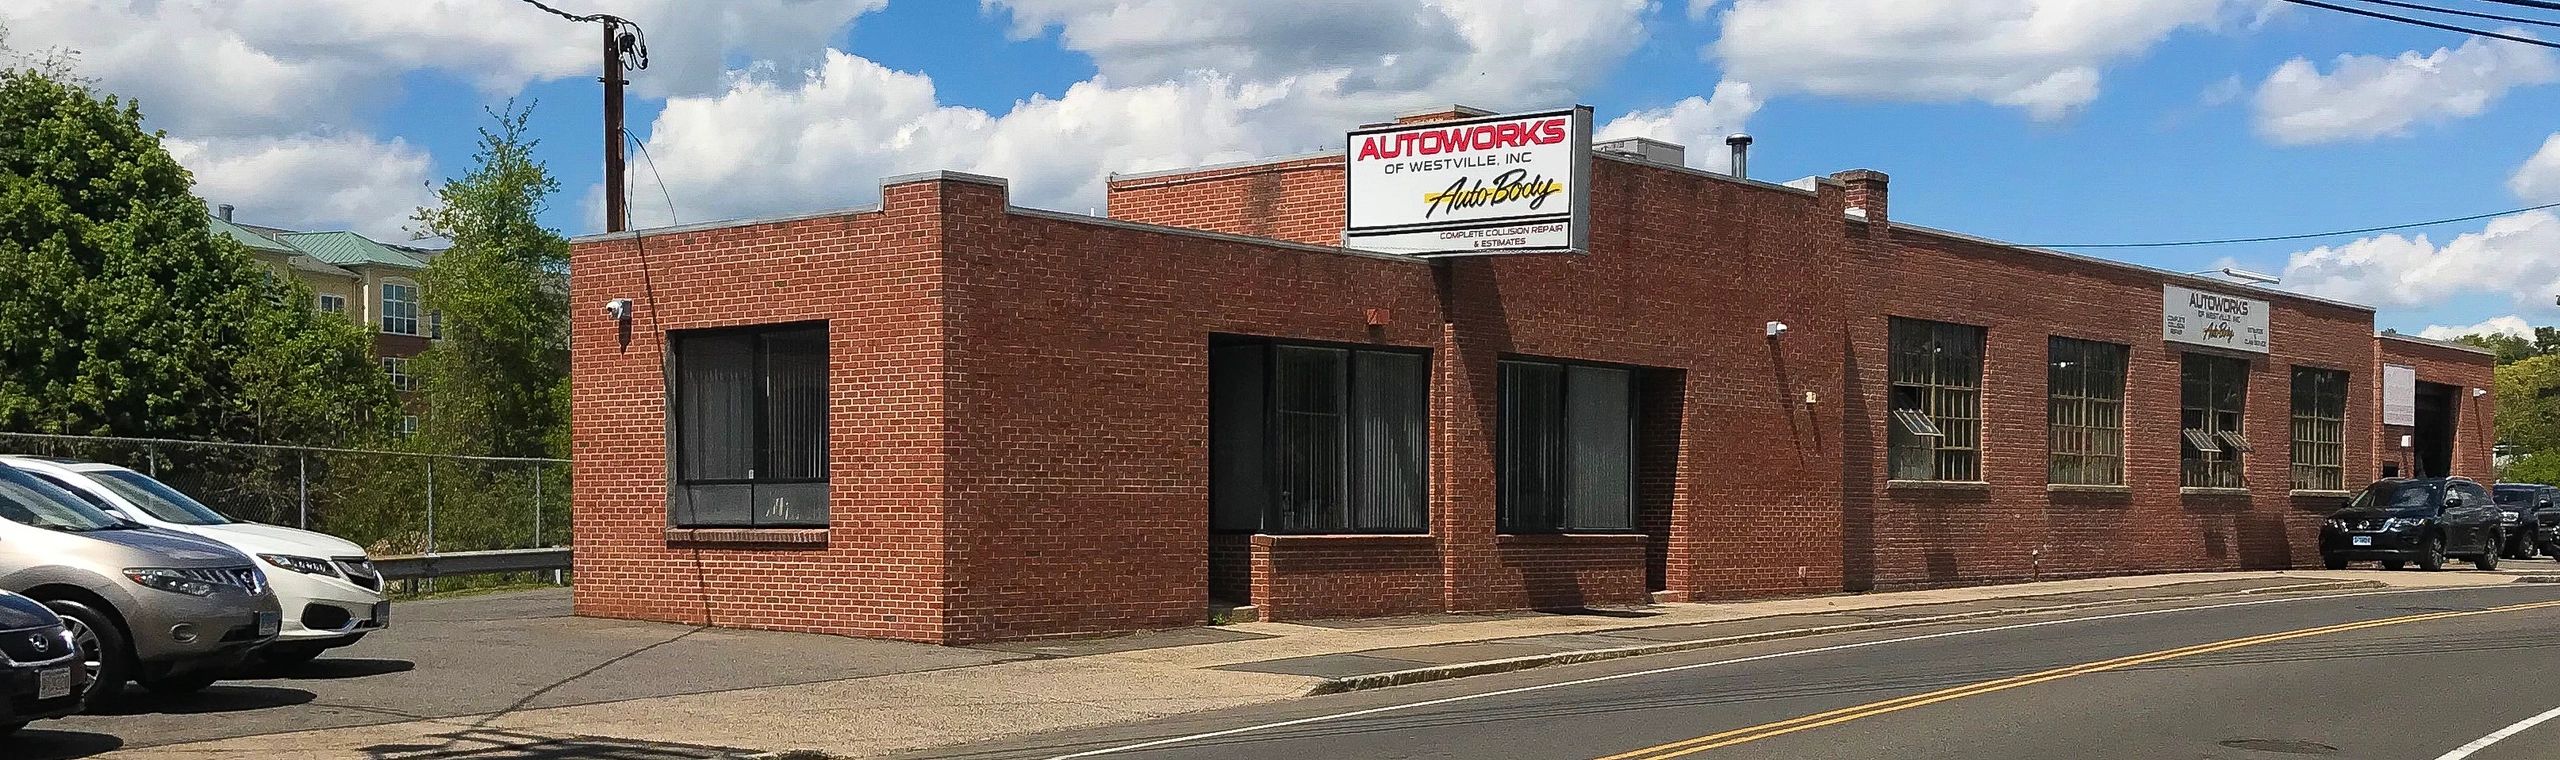 Auto Body Shop - Autoworks of Westville, Inc.